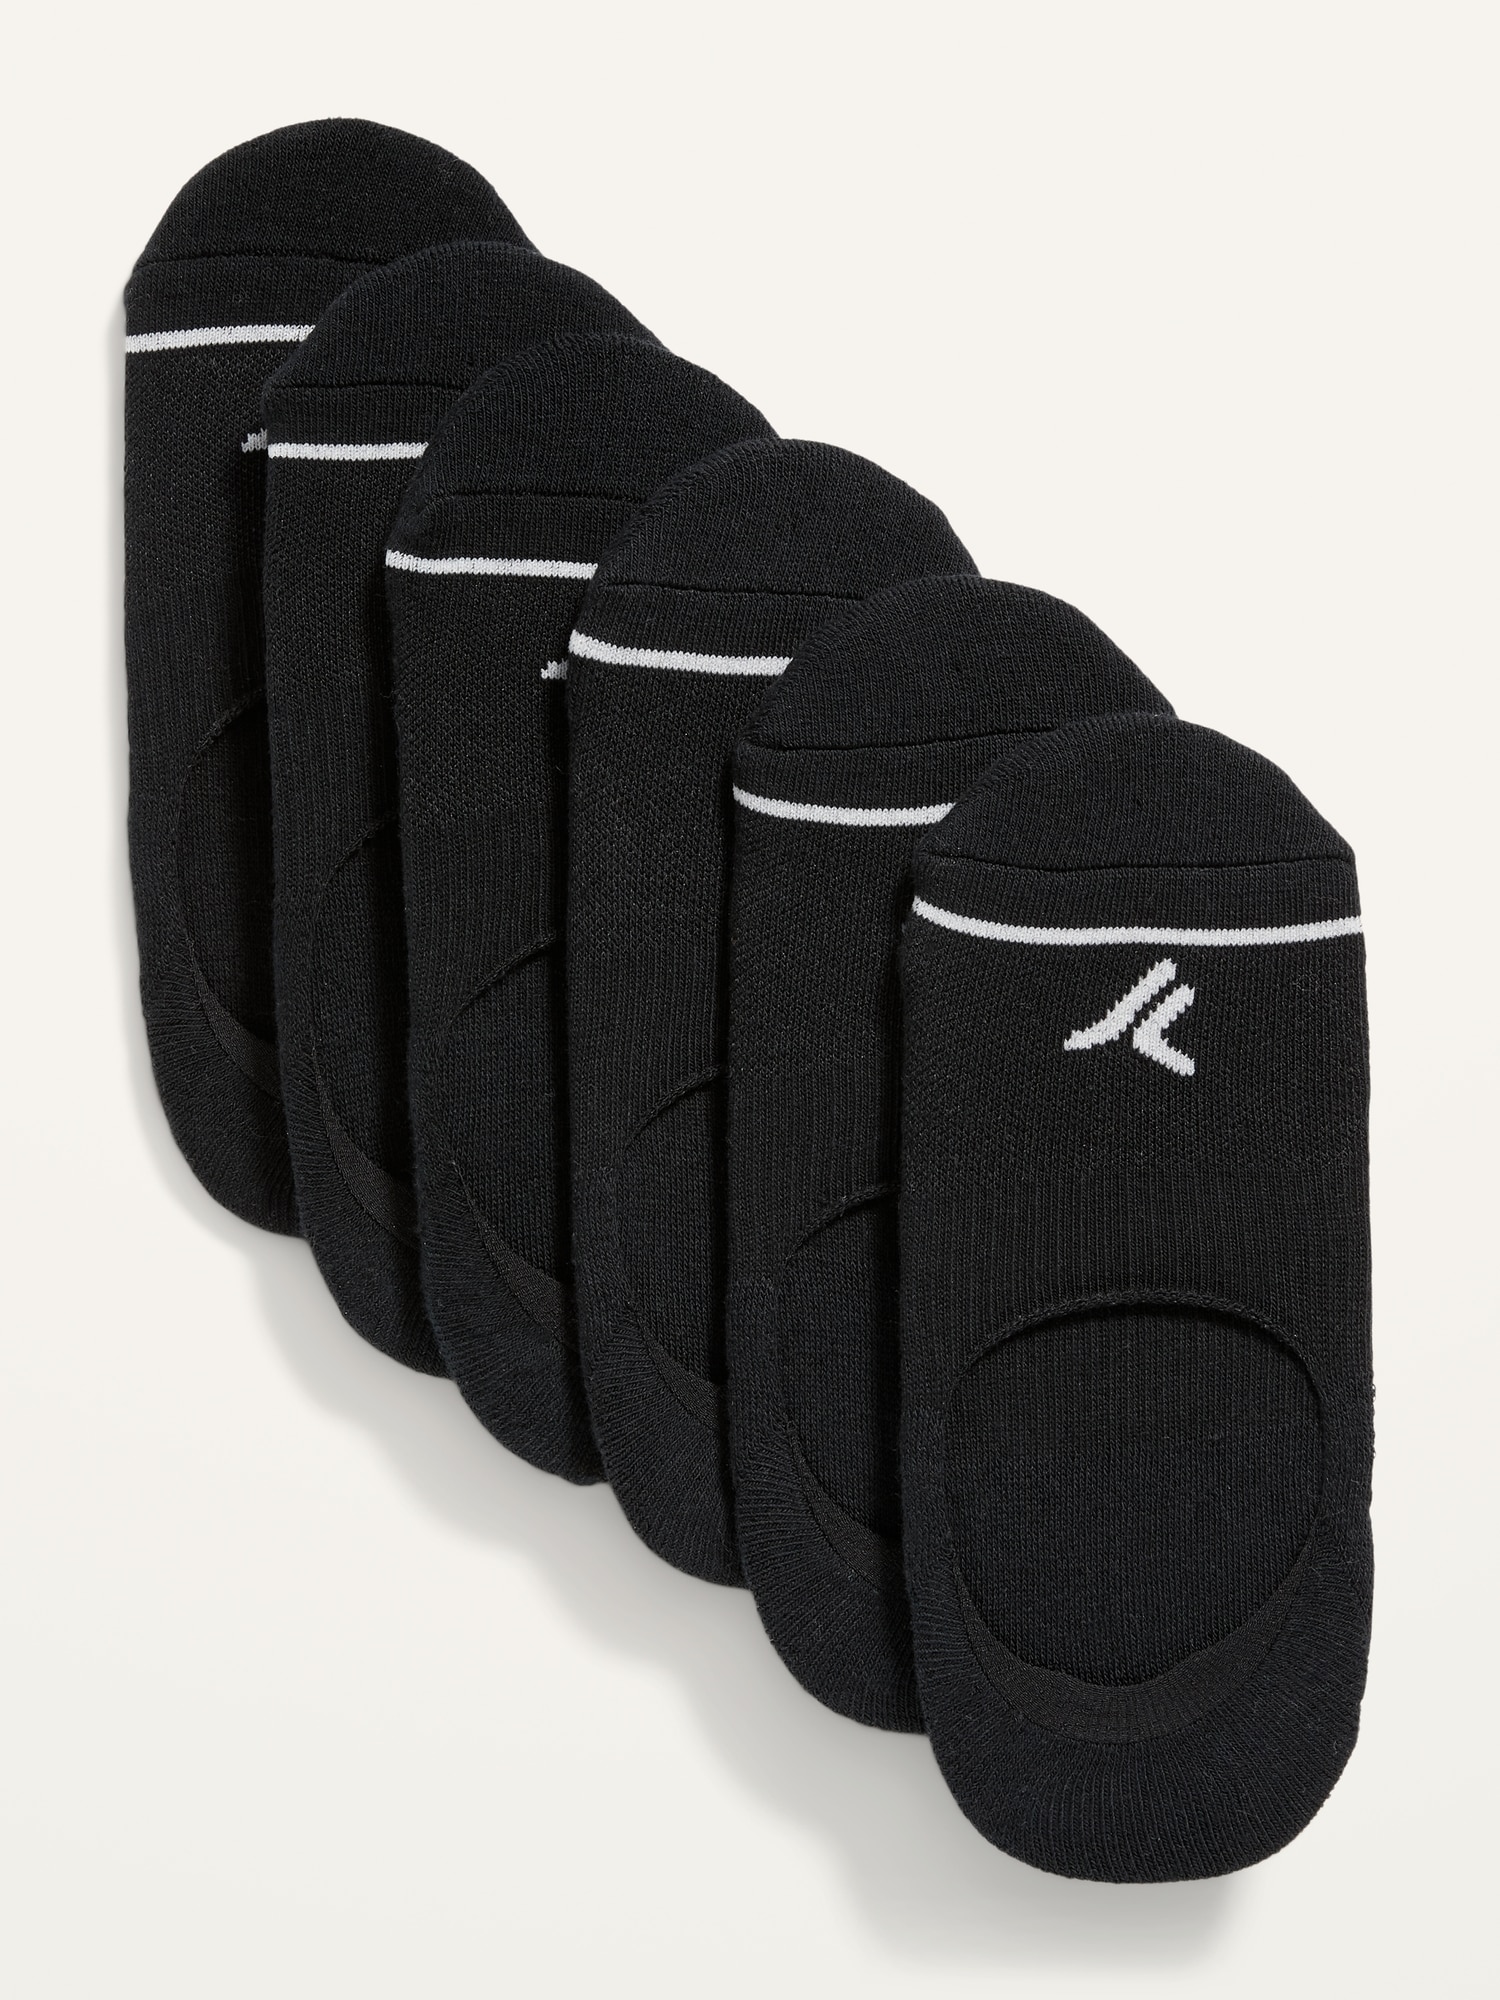 Ankle Socks 6-Pack For Women